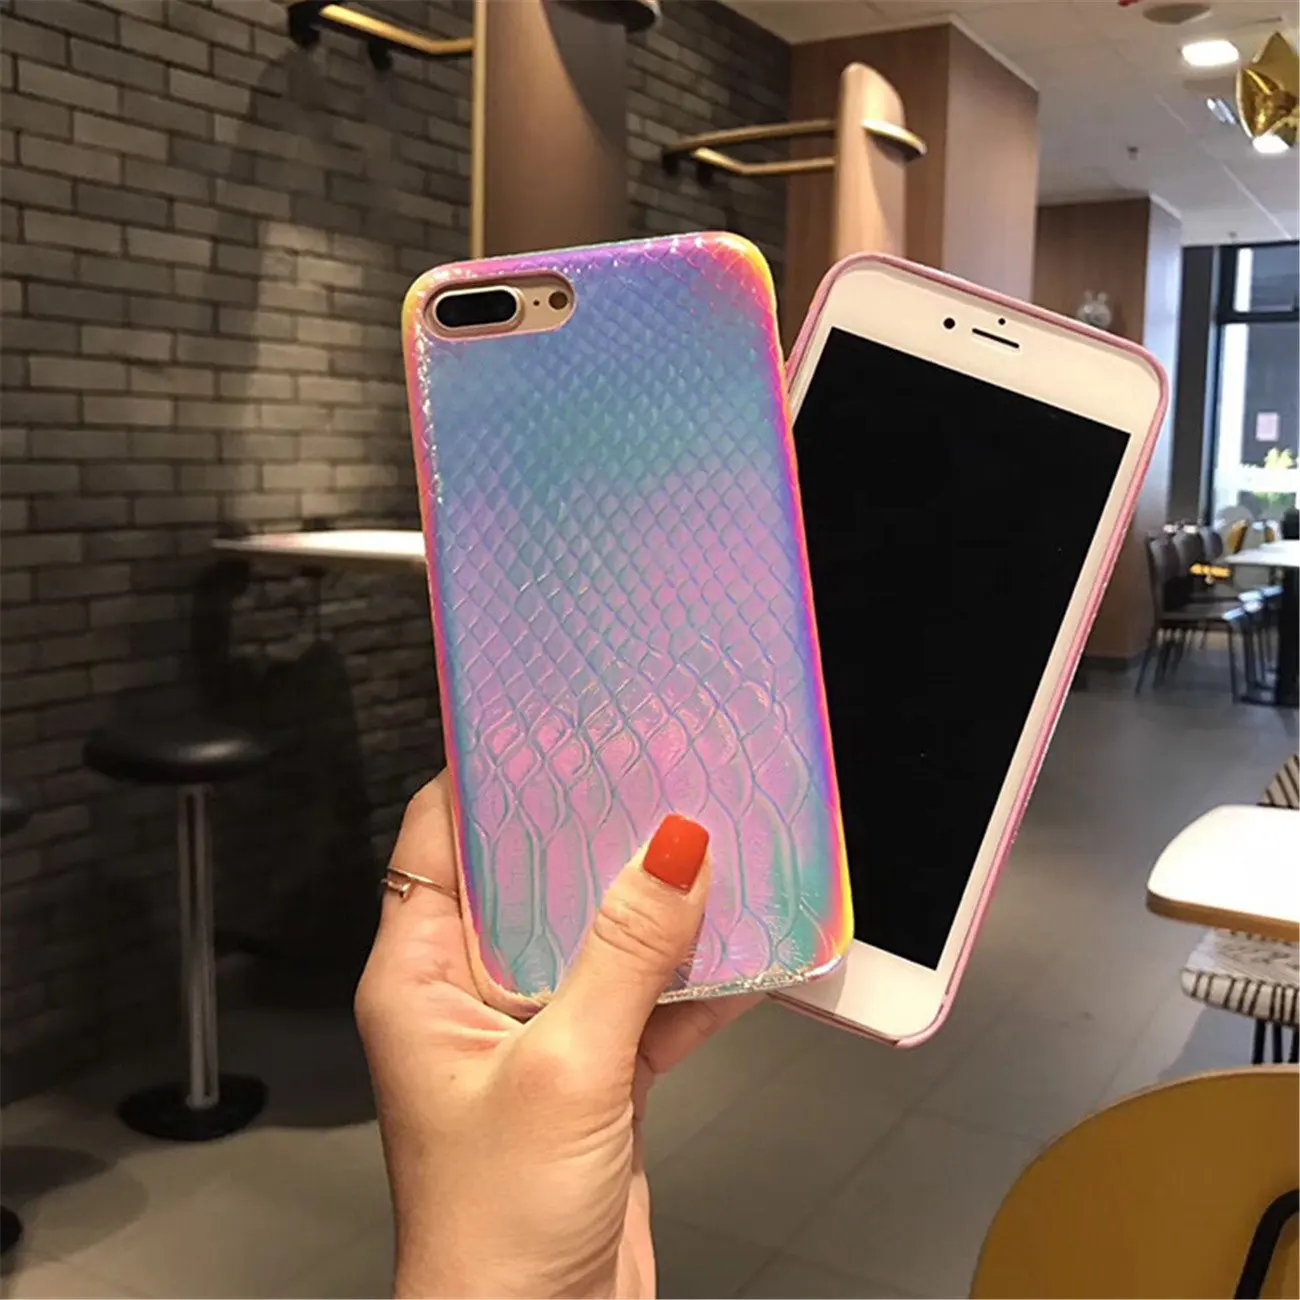 Цветной мягкий чехол с 3d-изображением русалки рыбьей чешуи для iPhone 11 Pro XS Max XR X прозрачный силиконовый чехол градиентного цвета для iPhone 7 8 6 Plus